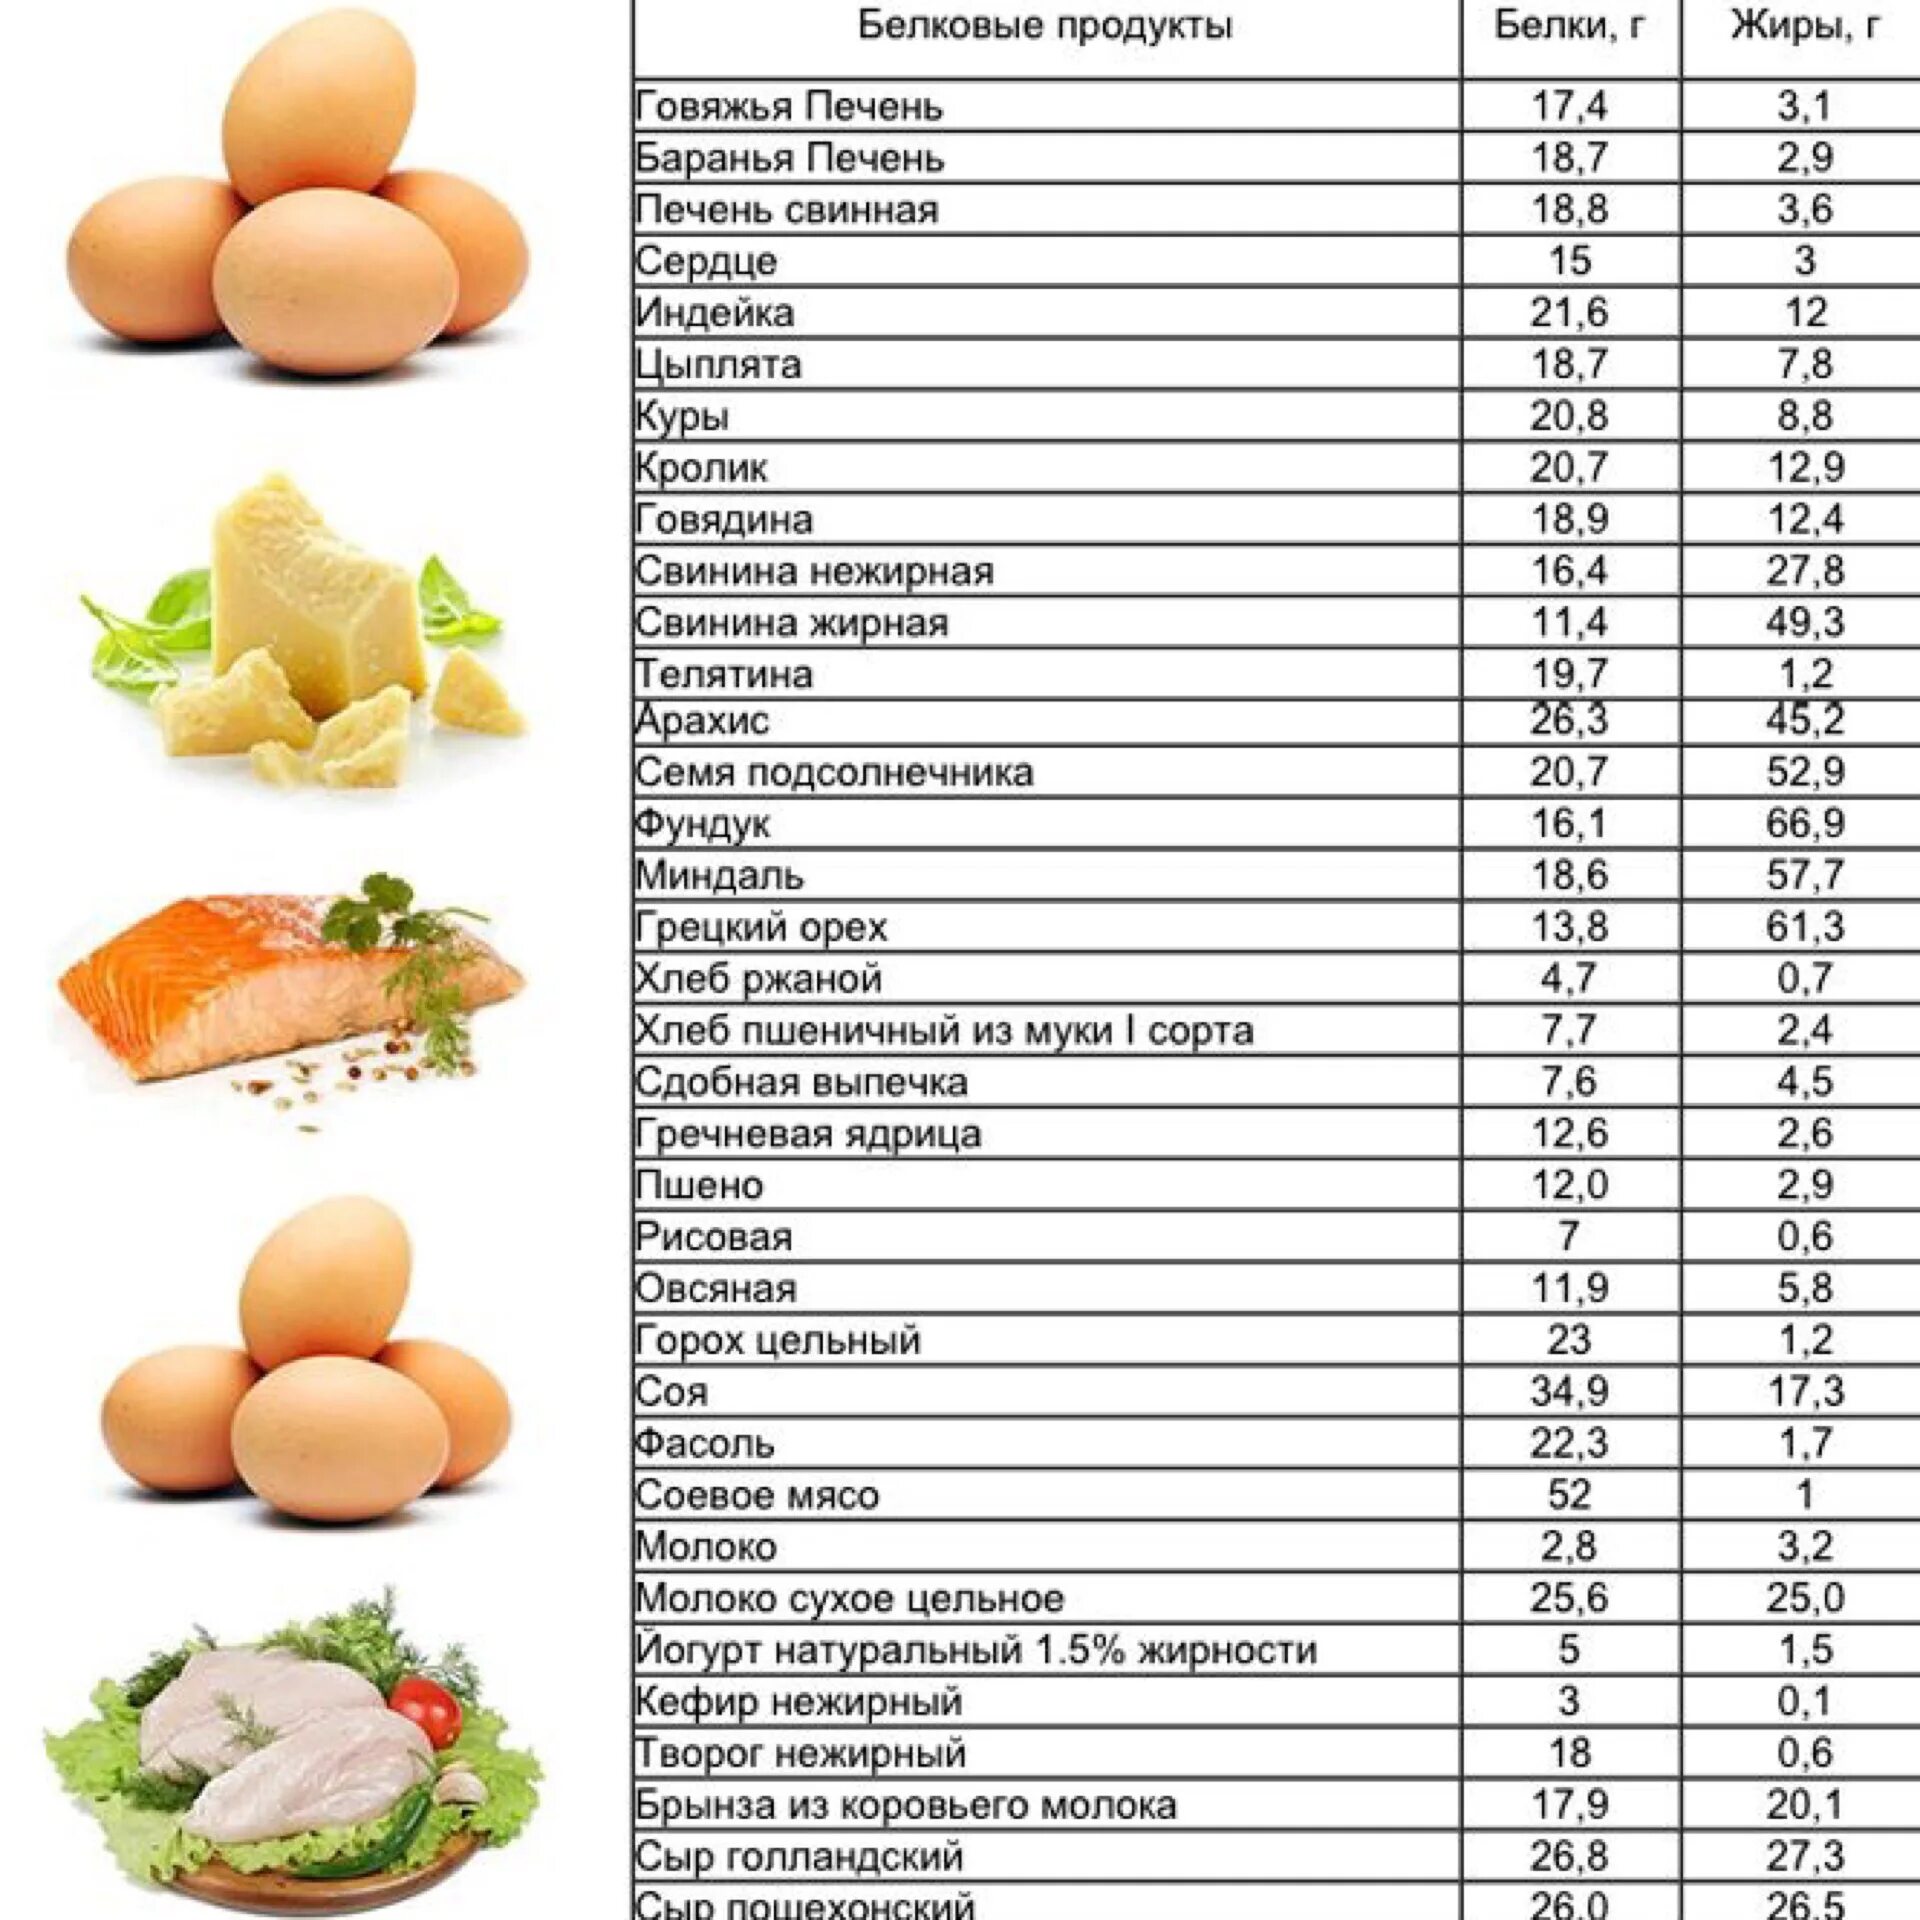 Овощи содержащие белки. Продукты содержащие белок для похудения таблица список продуктов. Продукты богатые белком для похудения таблица список. Продукты богатые белком для похудения таблица список и блюда. Продукты богатые белком список продуктов таблица.